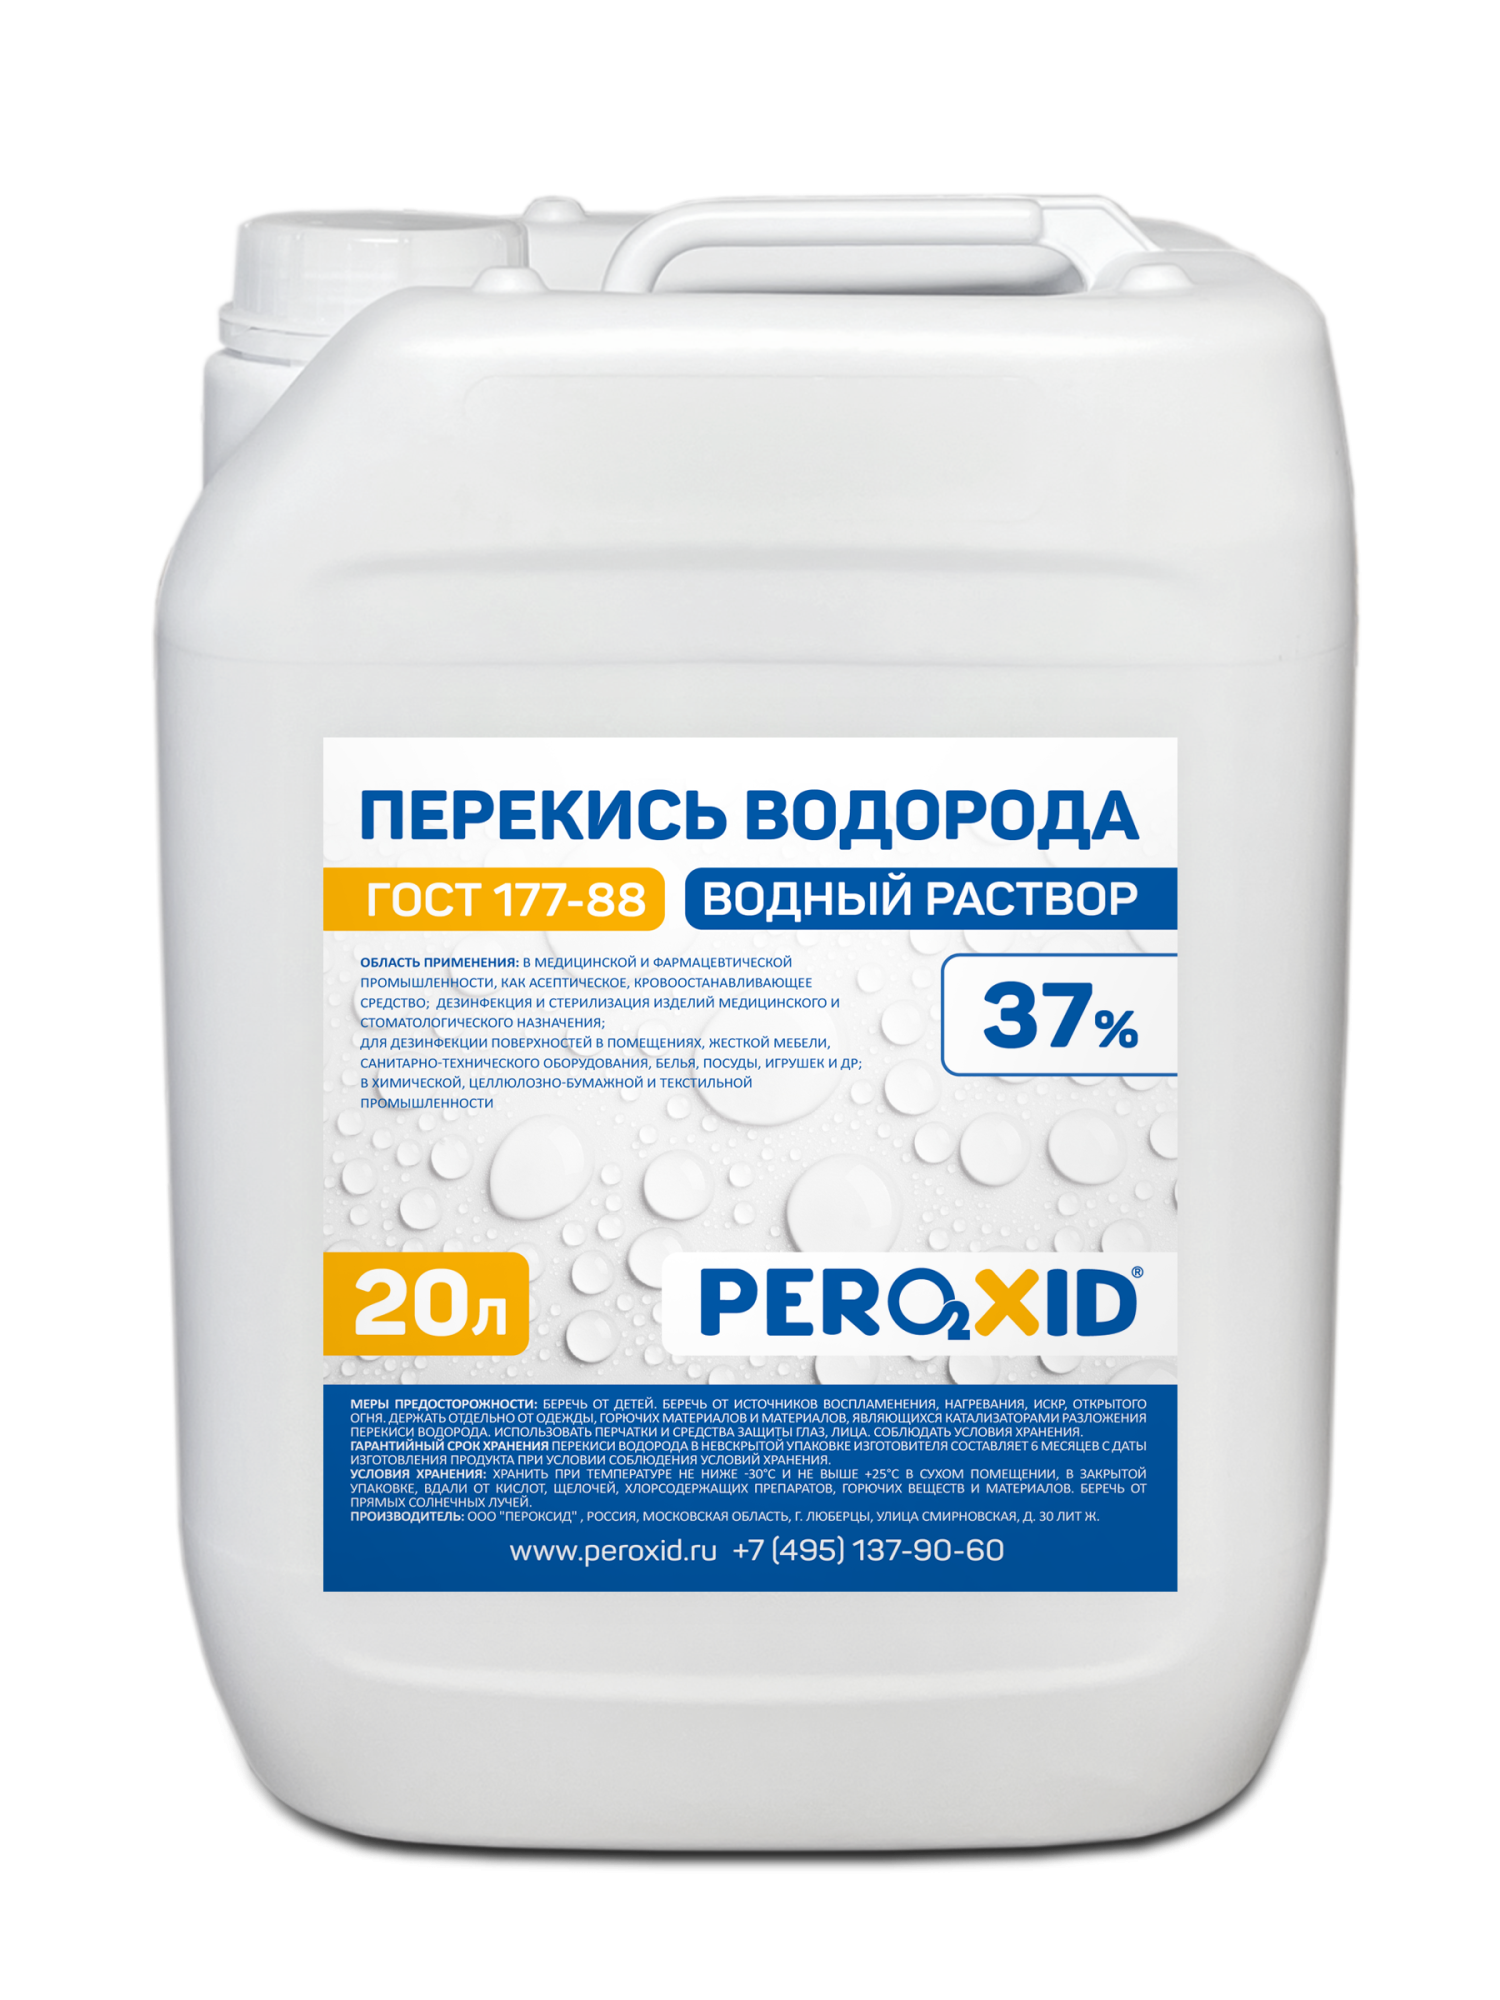 Перекись водорода водный раствор PEROXID 37% марка  ГОСТ 177-88  20 л/24 кг